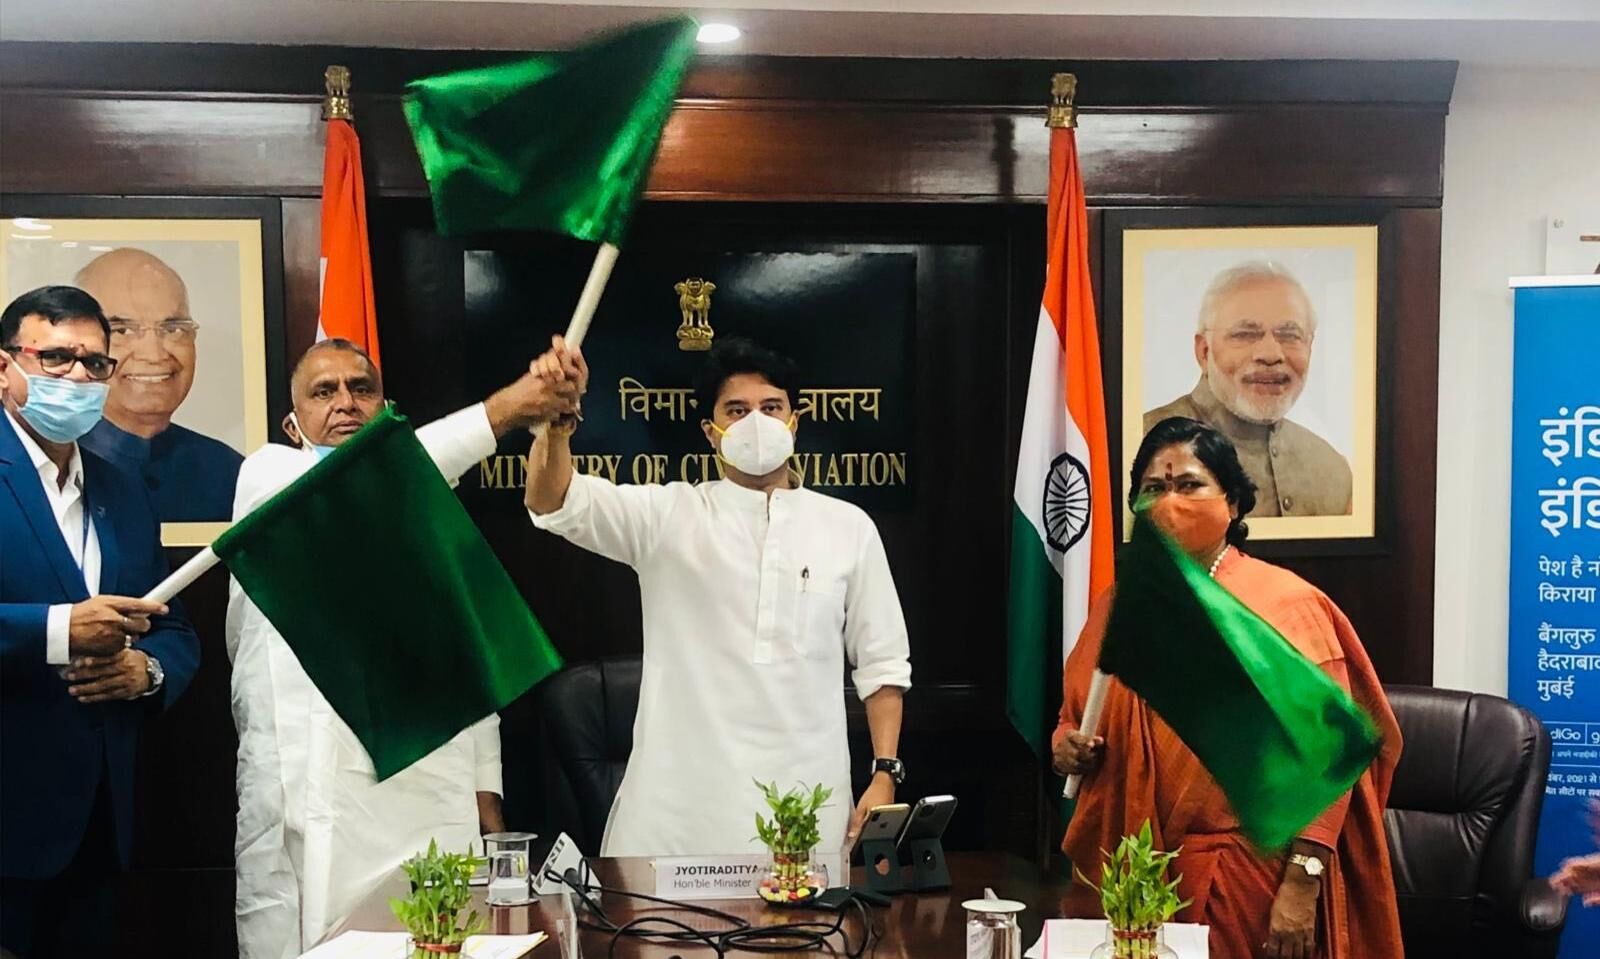 ज्योतिरादित्य सिंधिया ने कानपुर -बेंगलुरु फ्लाइट को दिखाई हरी झंडी